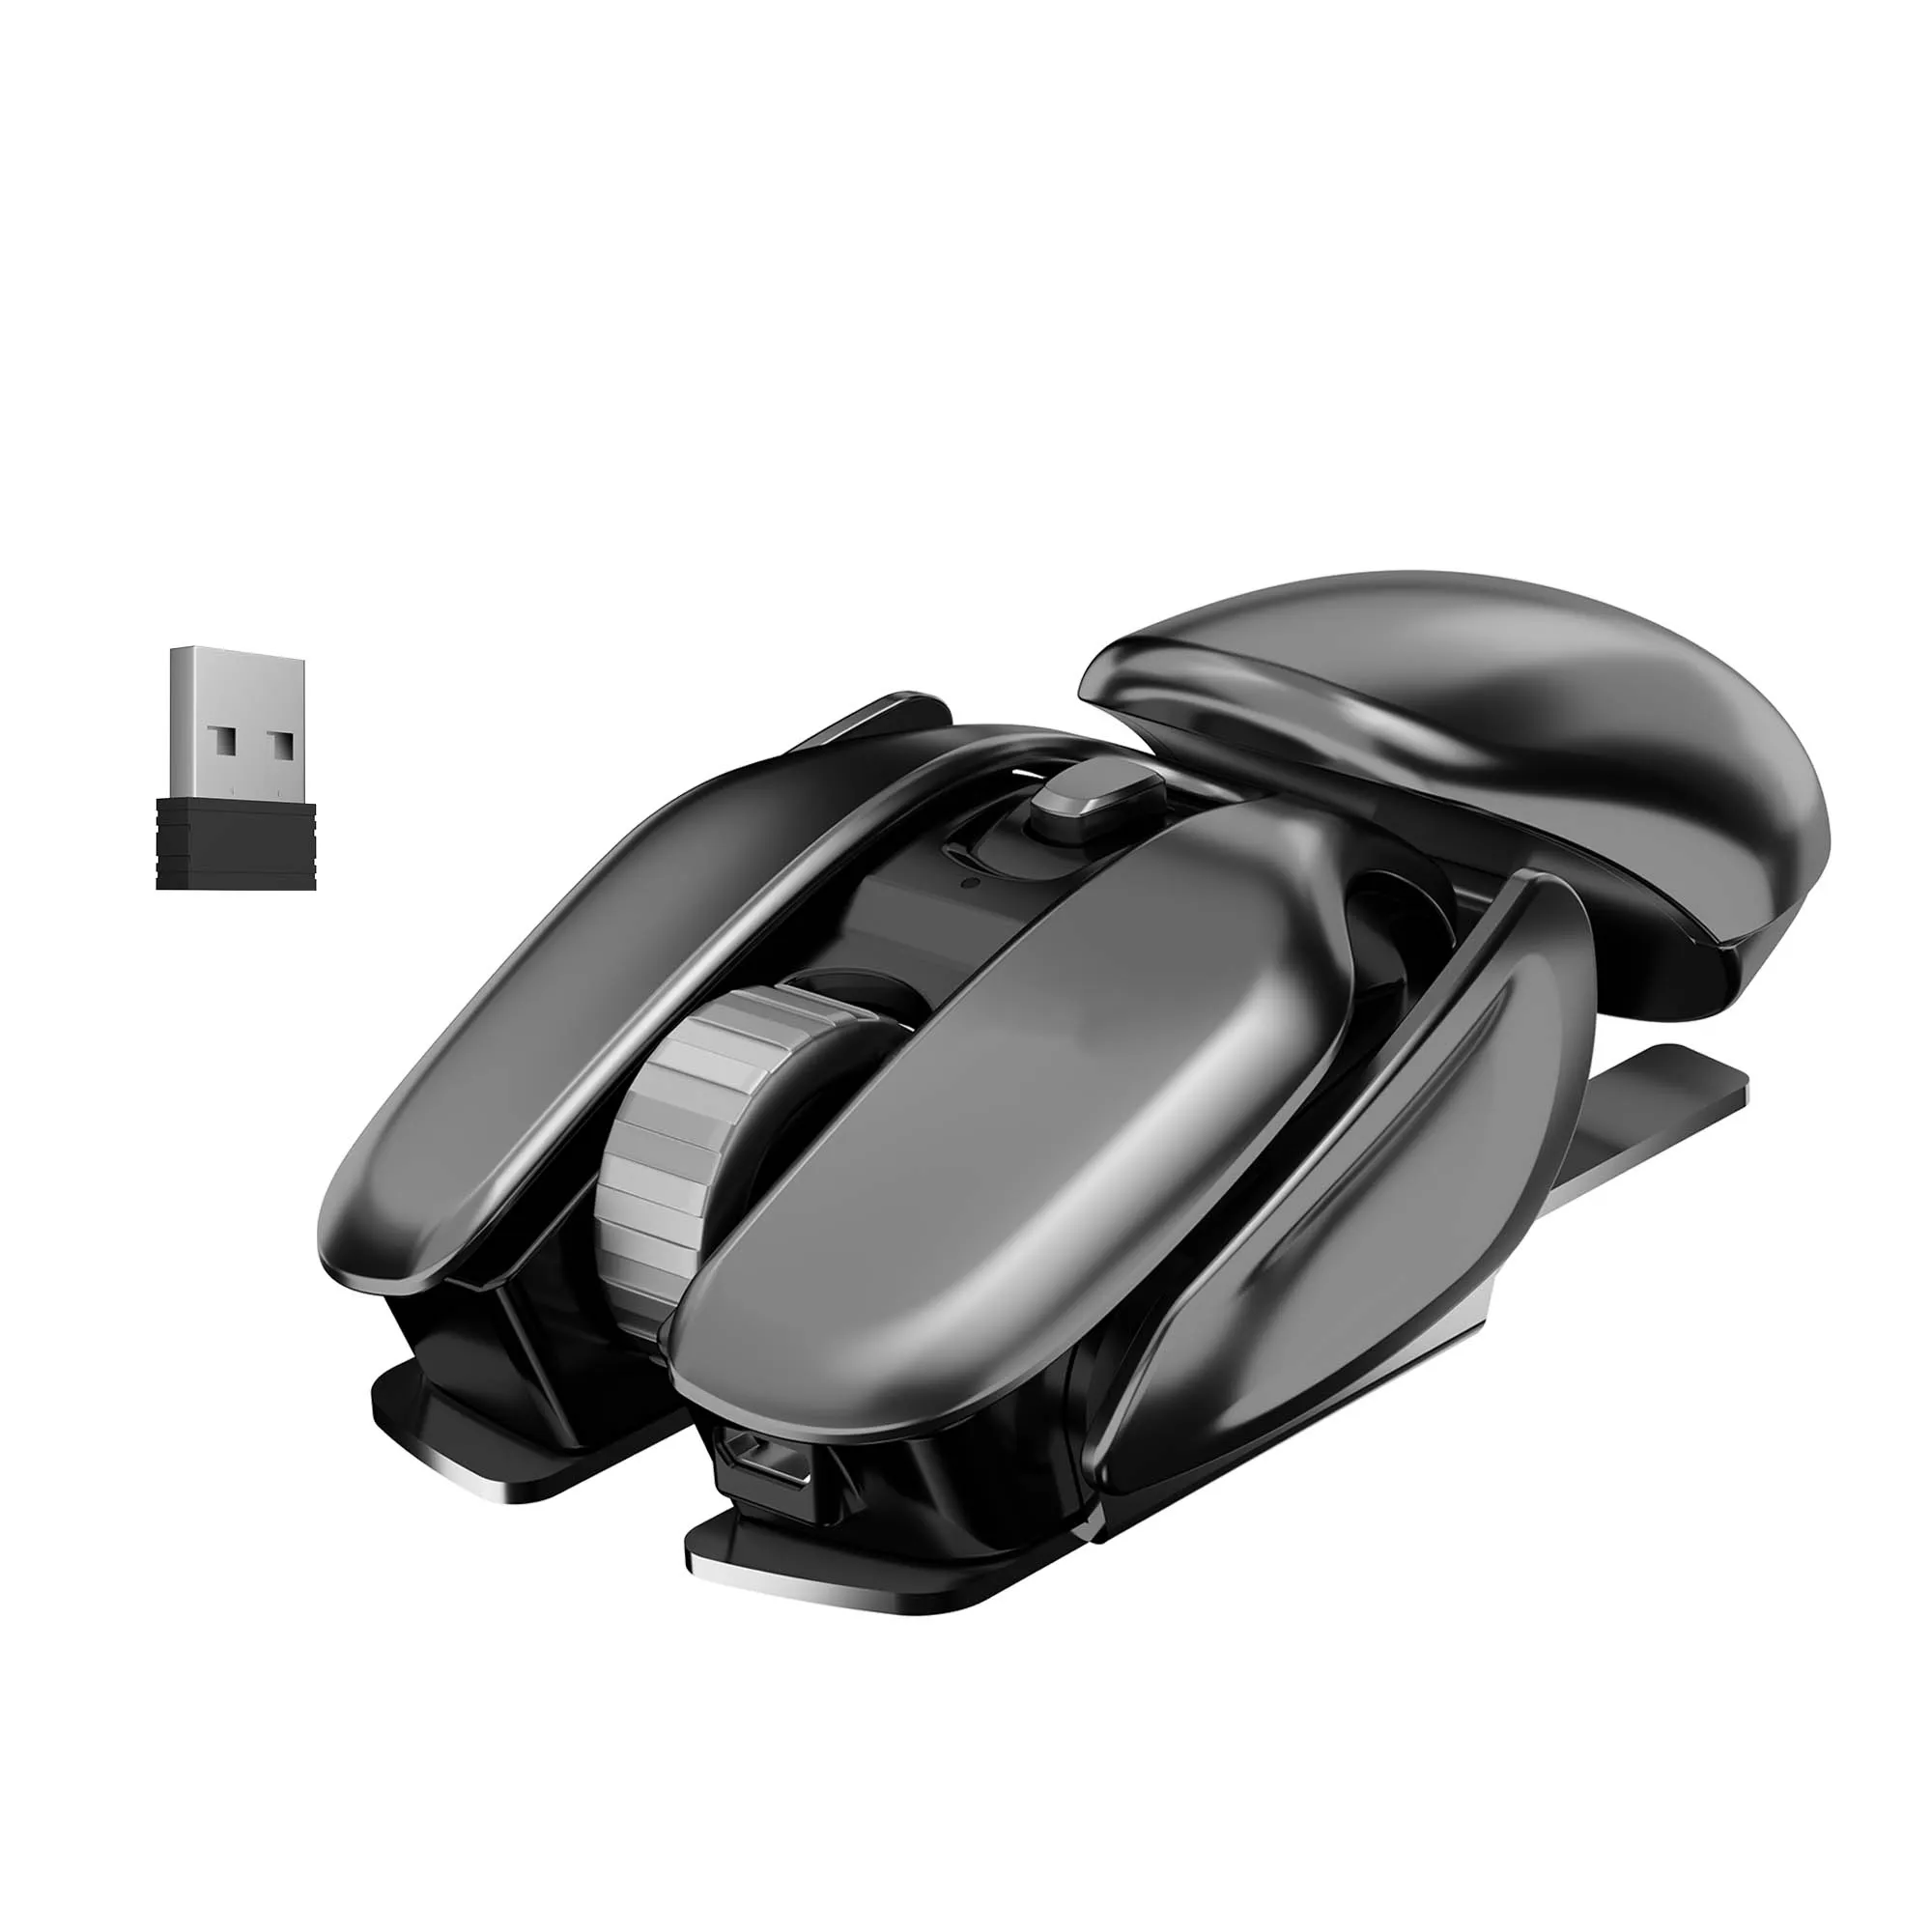 DANCESUL AUTO SLEEP 2,4 GHz Souris sans fil Ergonomic Alien Look Mouse Metal Mouse pour ordinateur portable PC avec récepteur USB